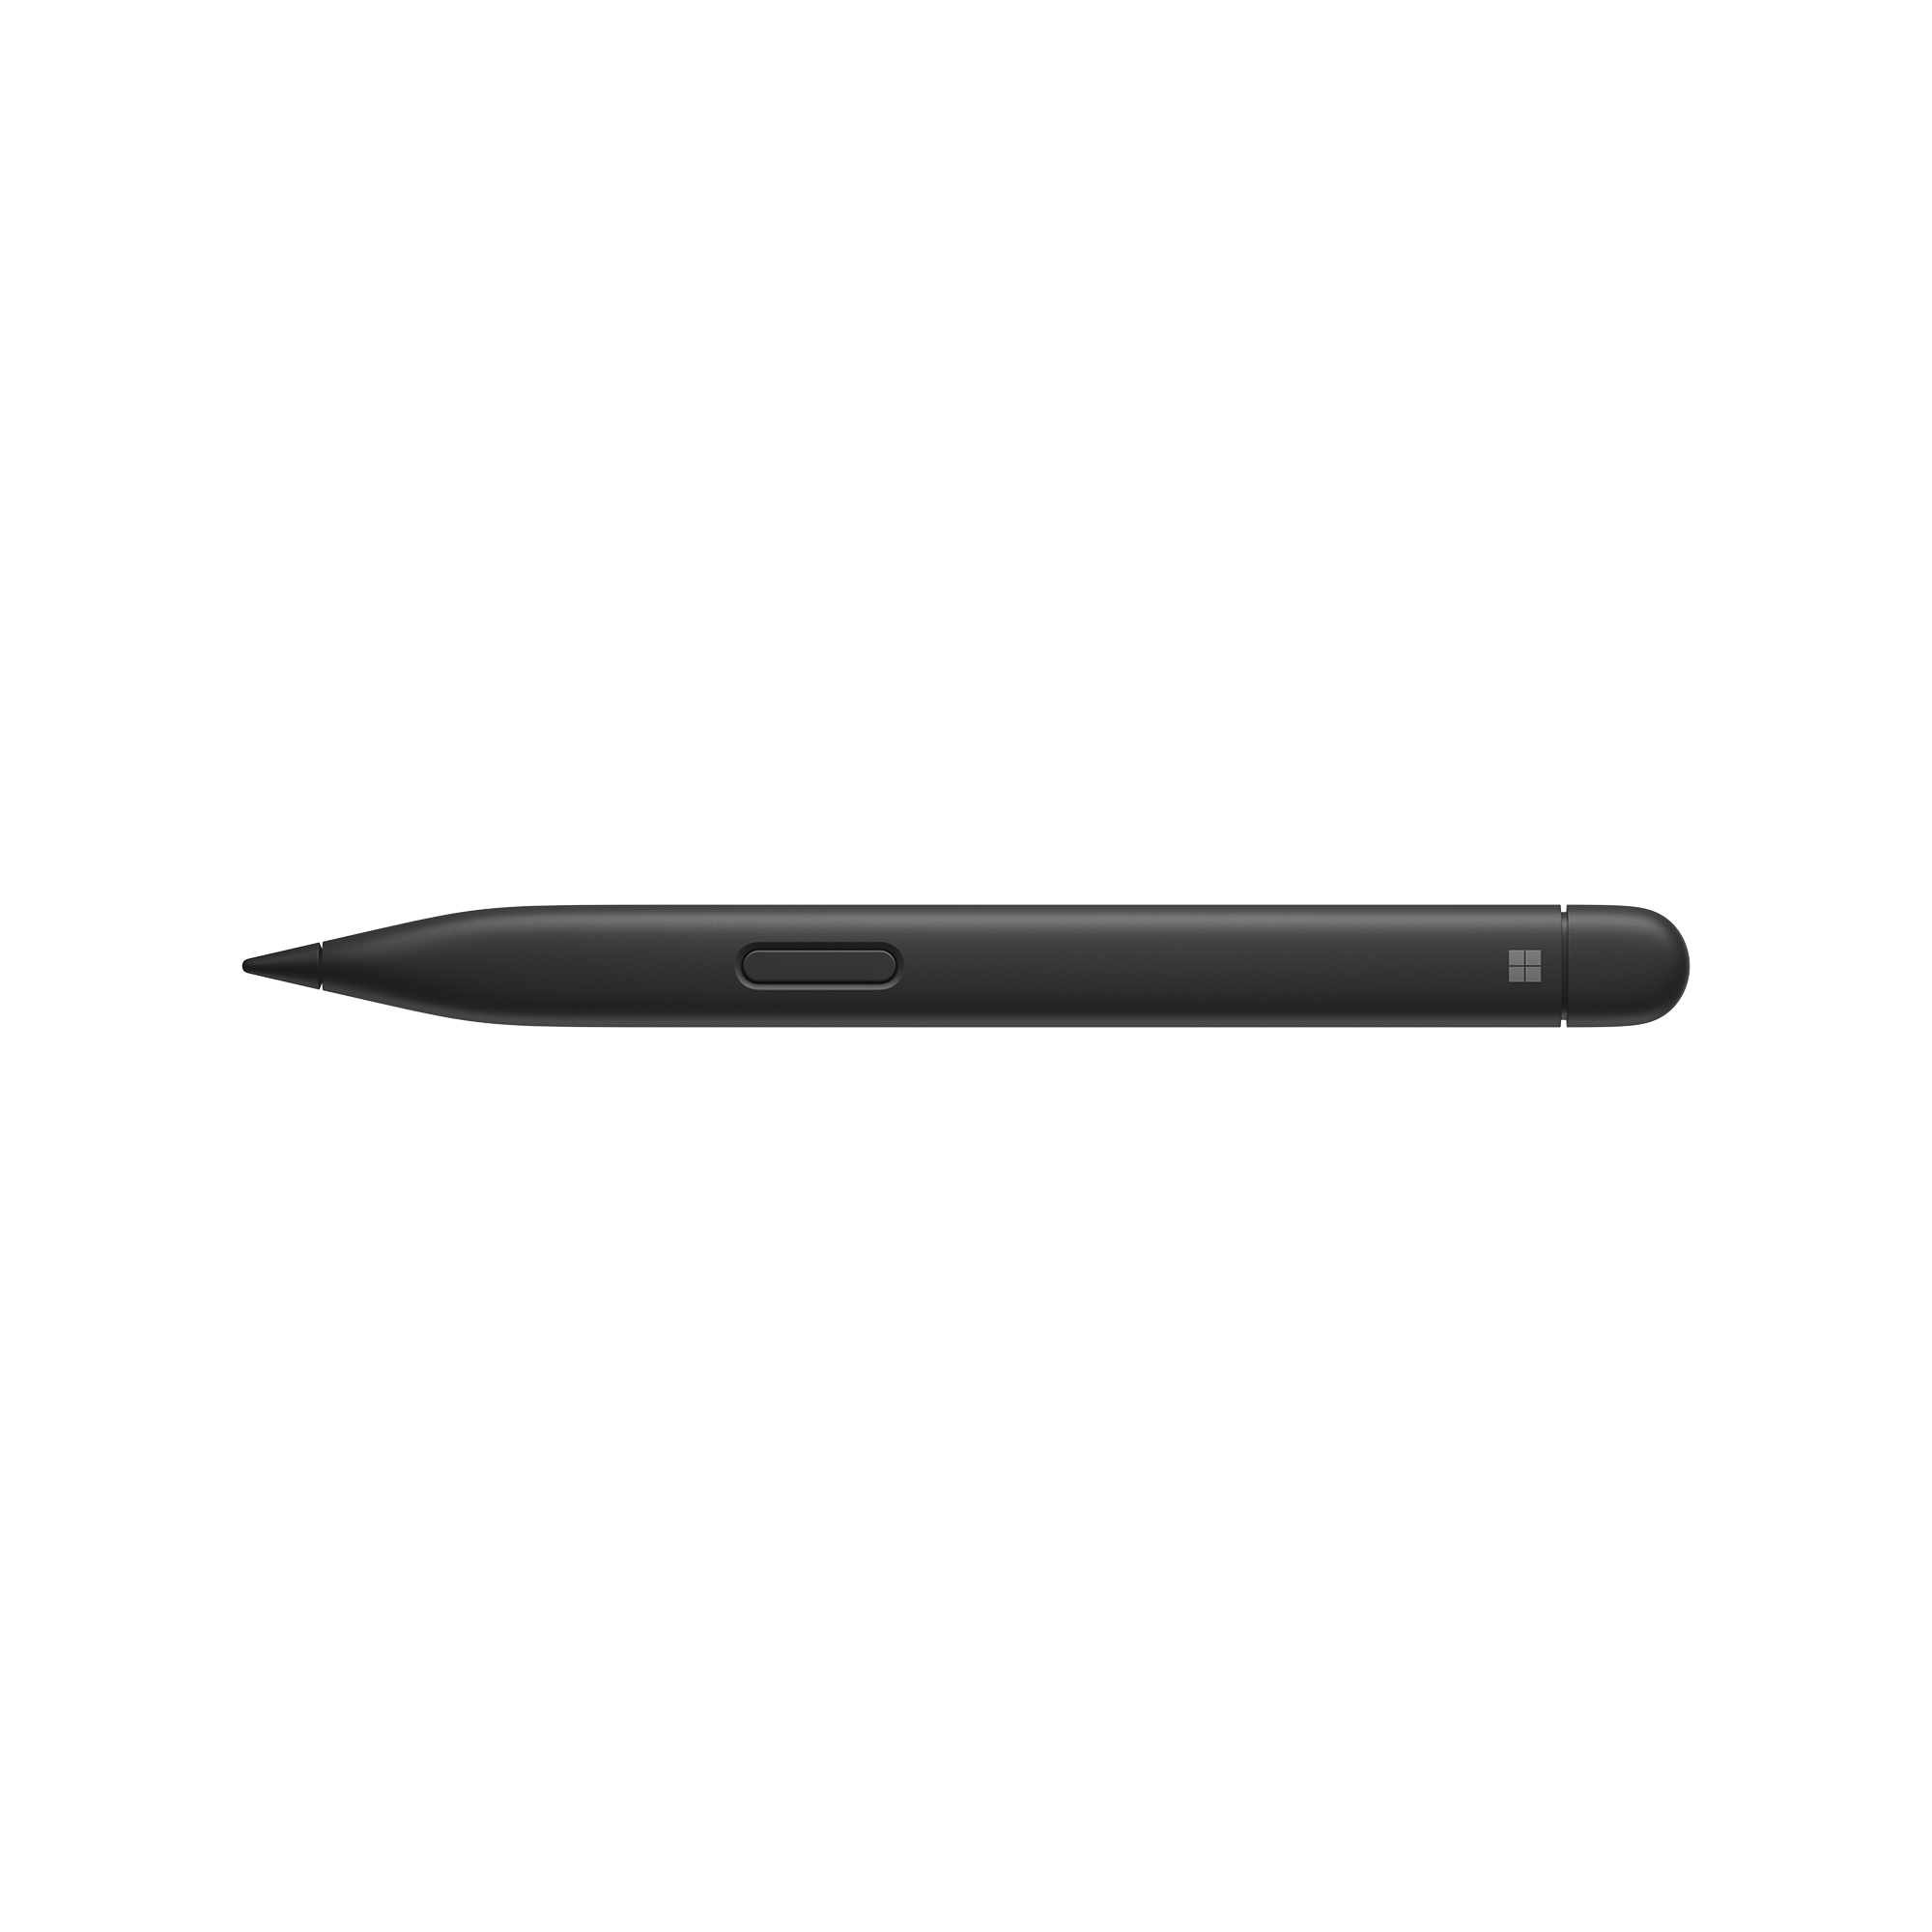 Erstaunlicher Preis! Microsoft 8X6-00001 Surface Pro Signature Pen Keyboard Black 2 - Slim with